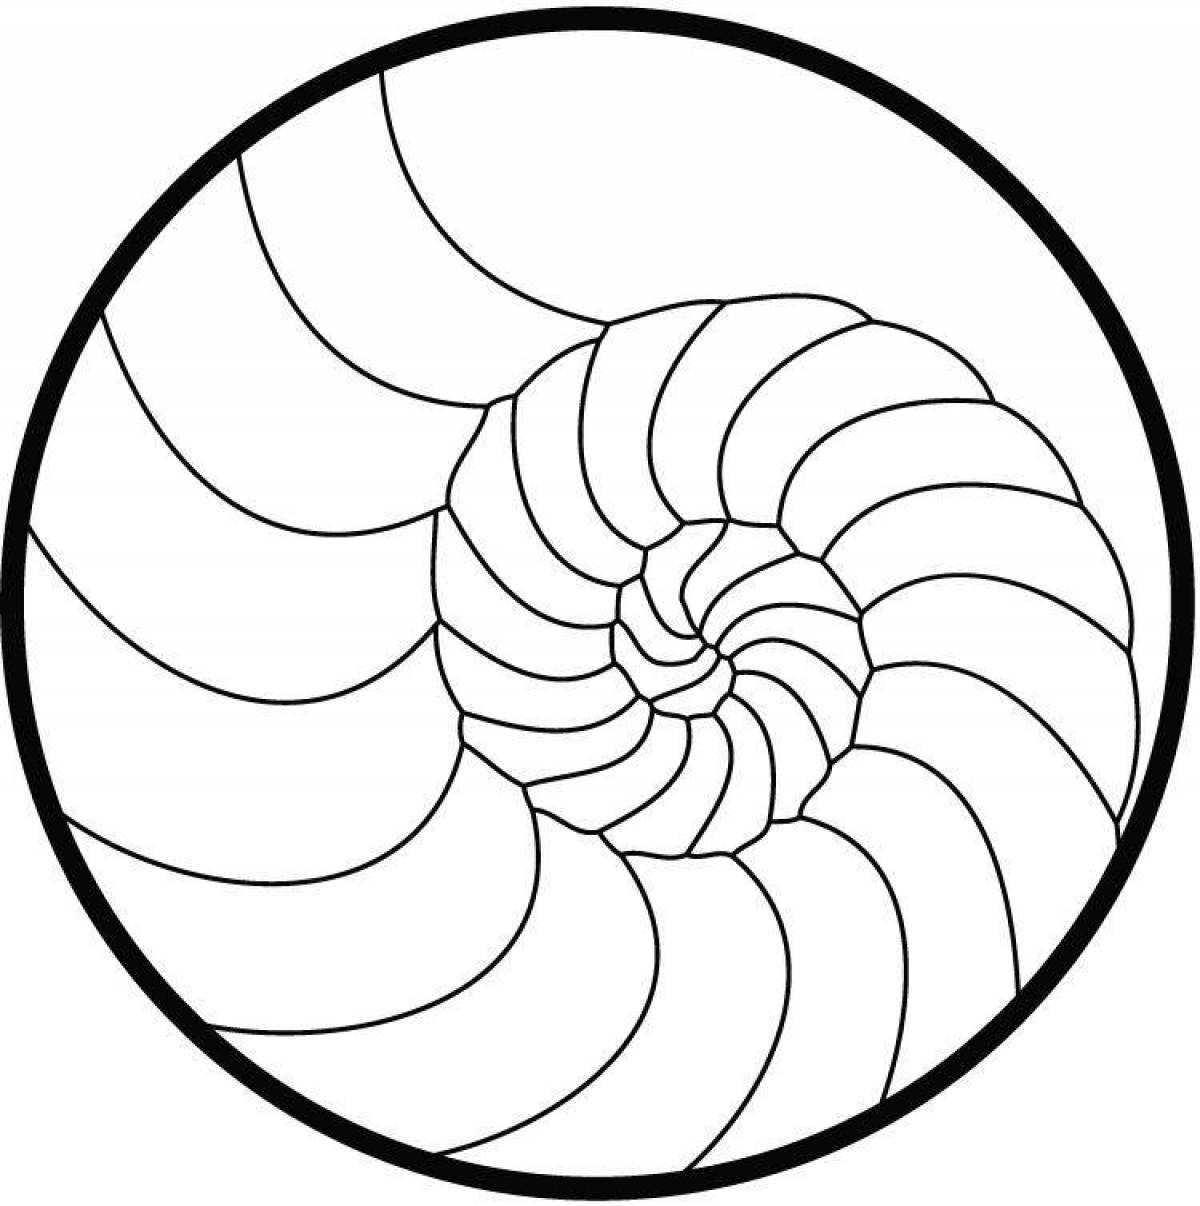 Violent coloring spiral pattern